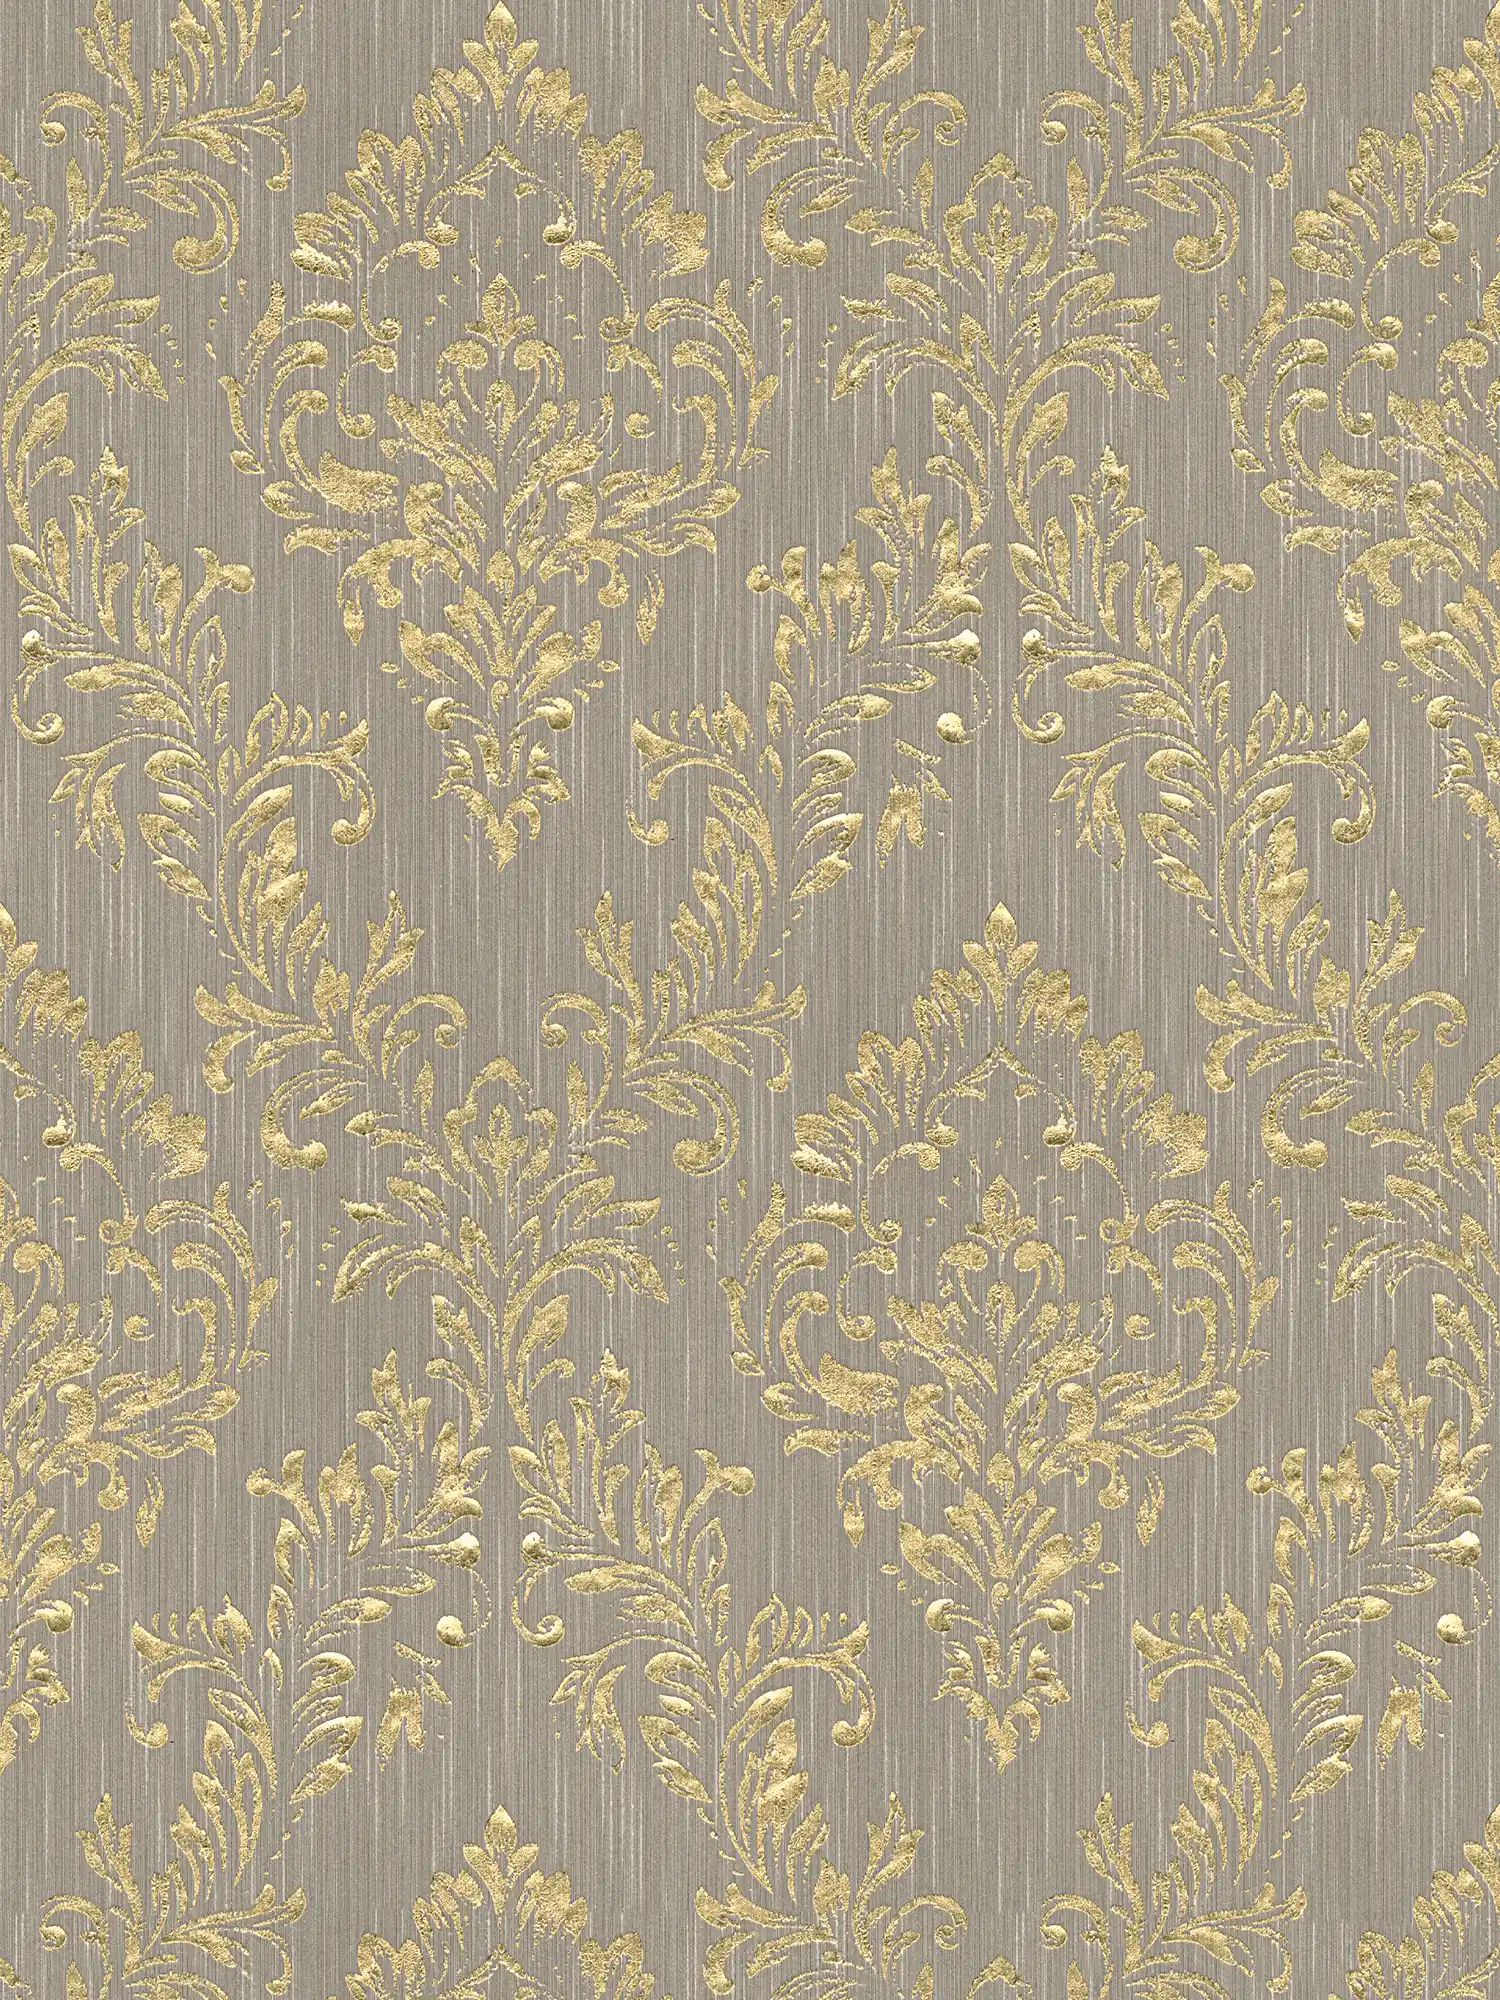 Papier peint ornemental floral avec effet scintillant doré - or, beige
